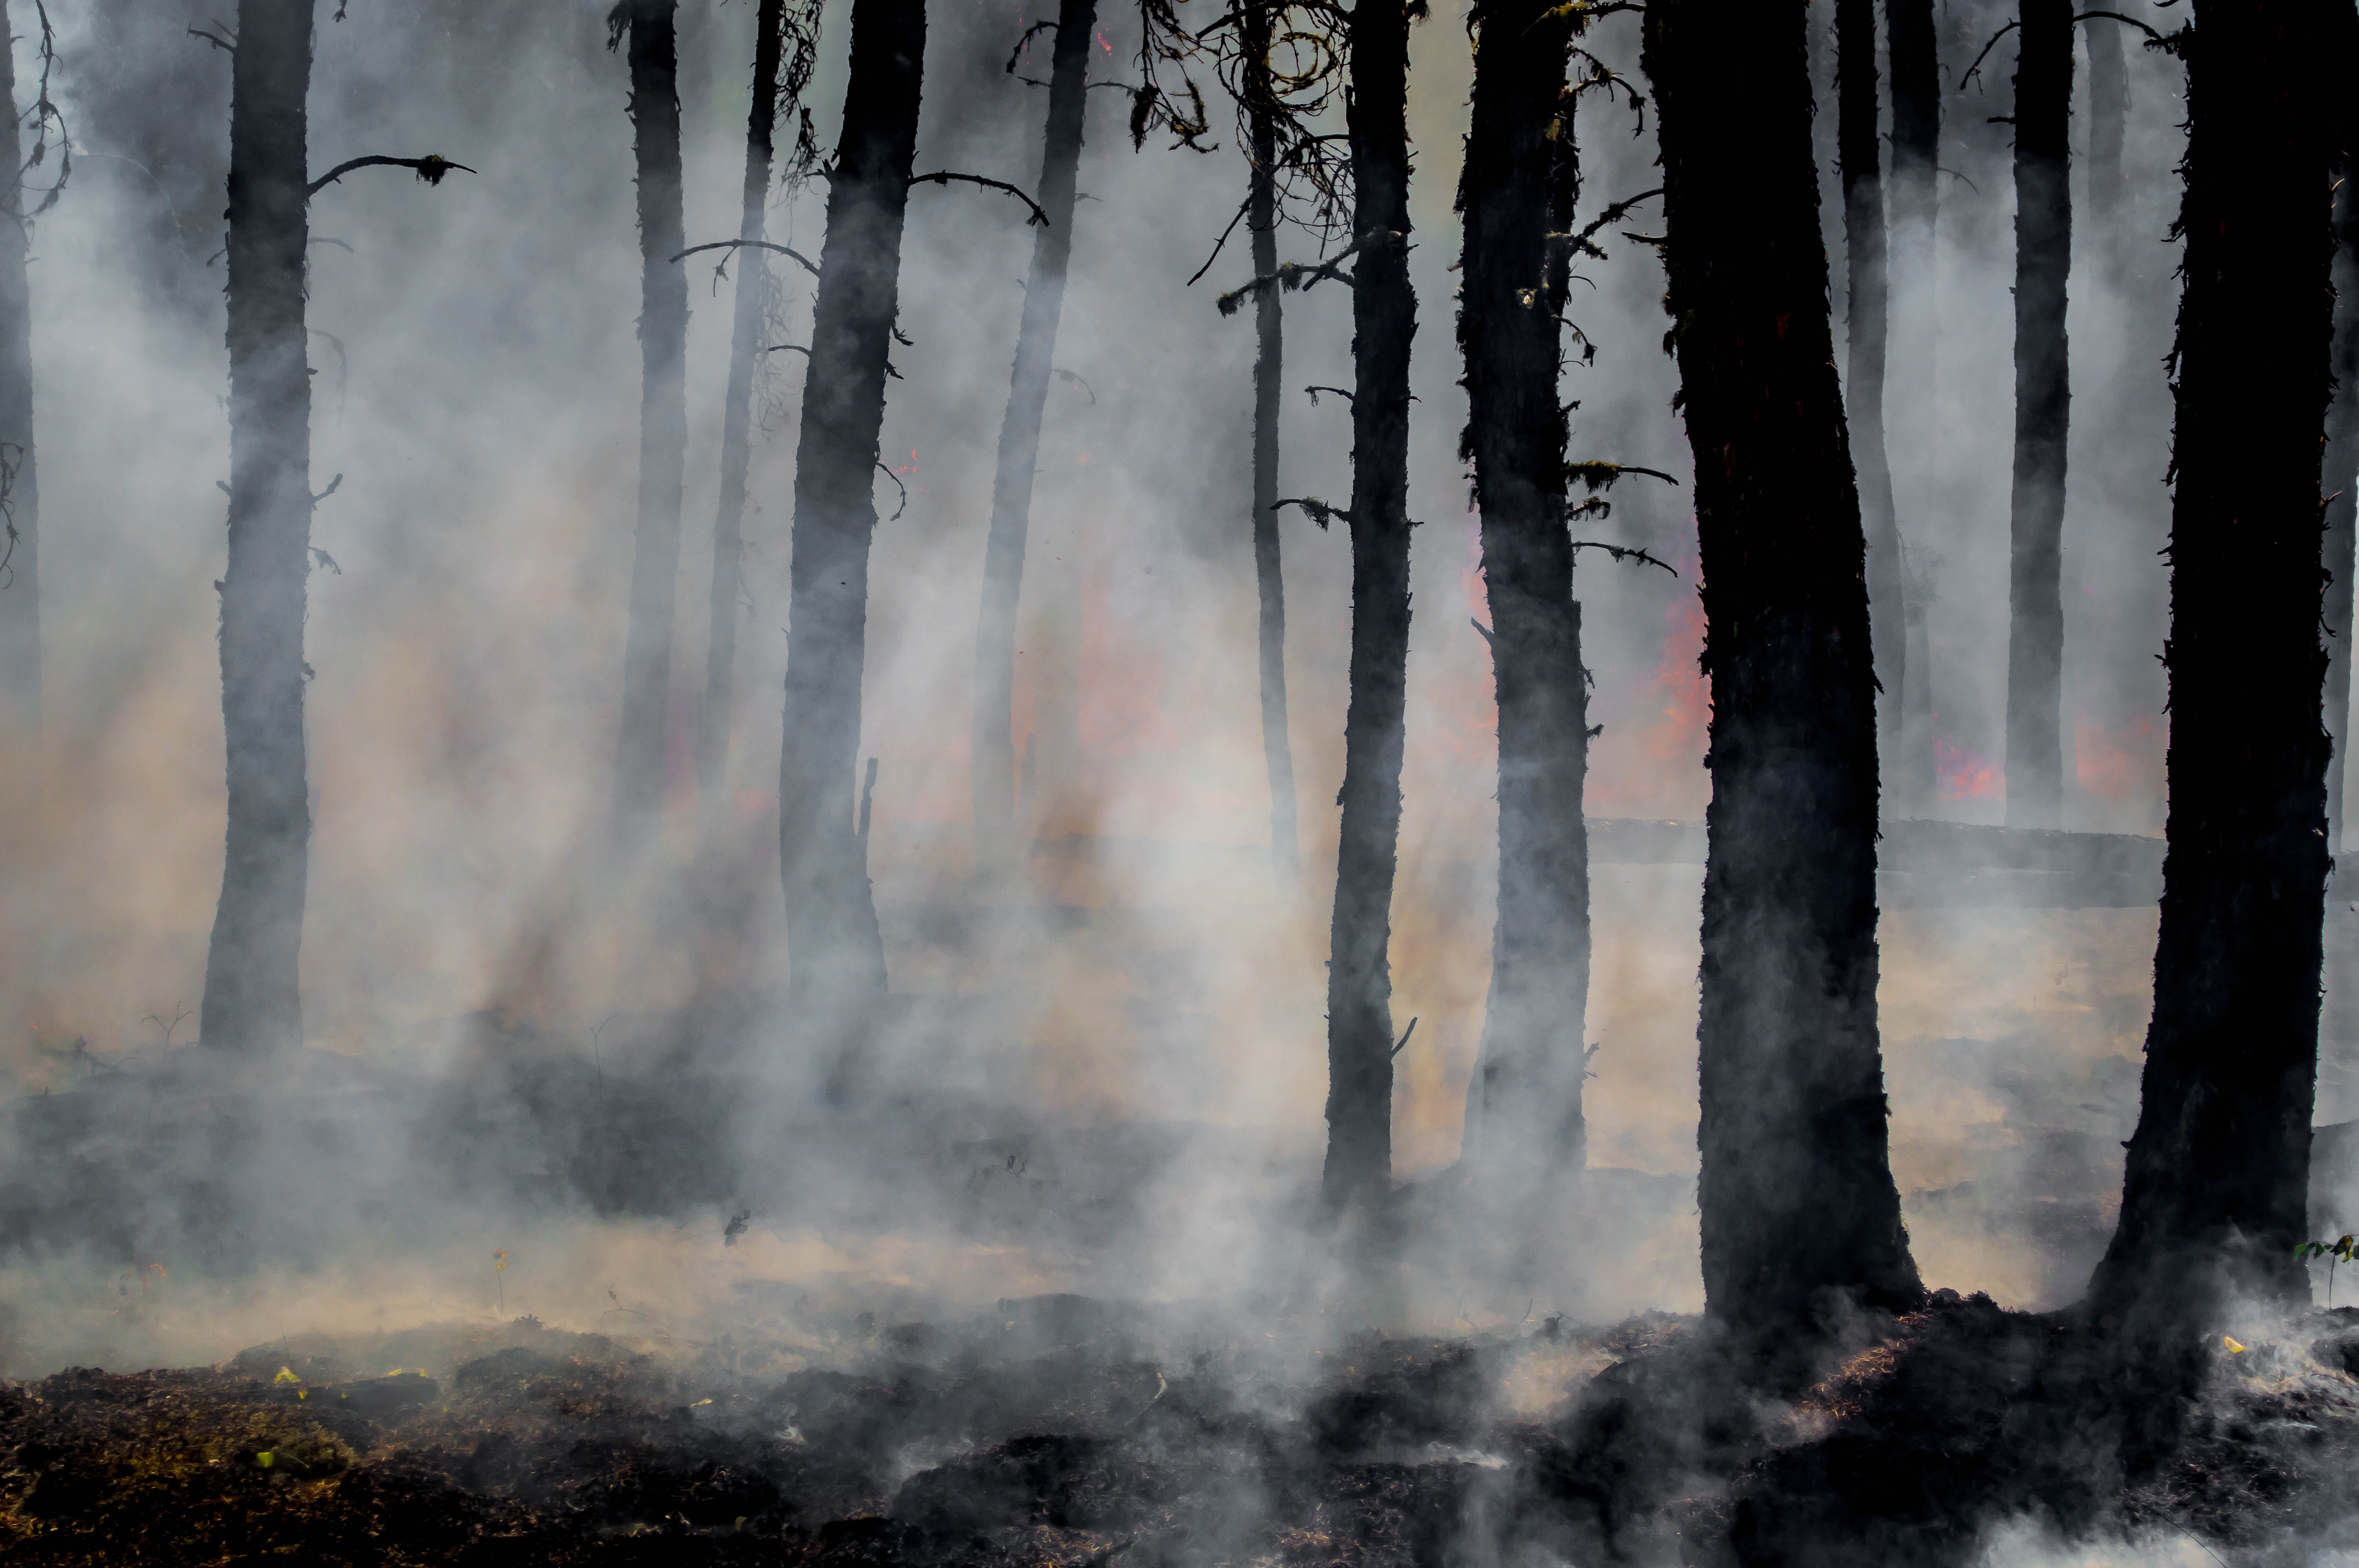 Fransa'da bu yıl yangınlar nedeniyle 47 bin hektardan fazla yeşil alan zarar gördü